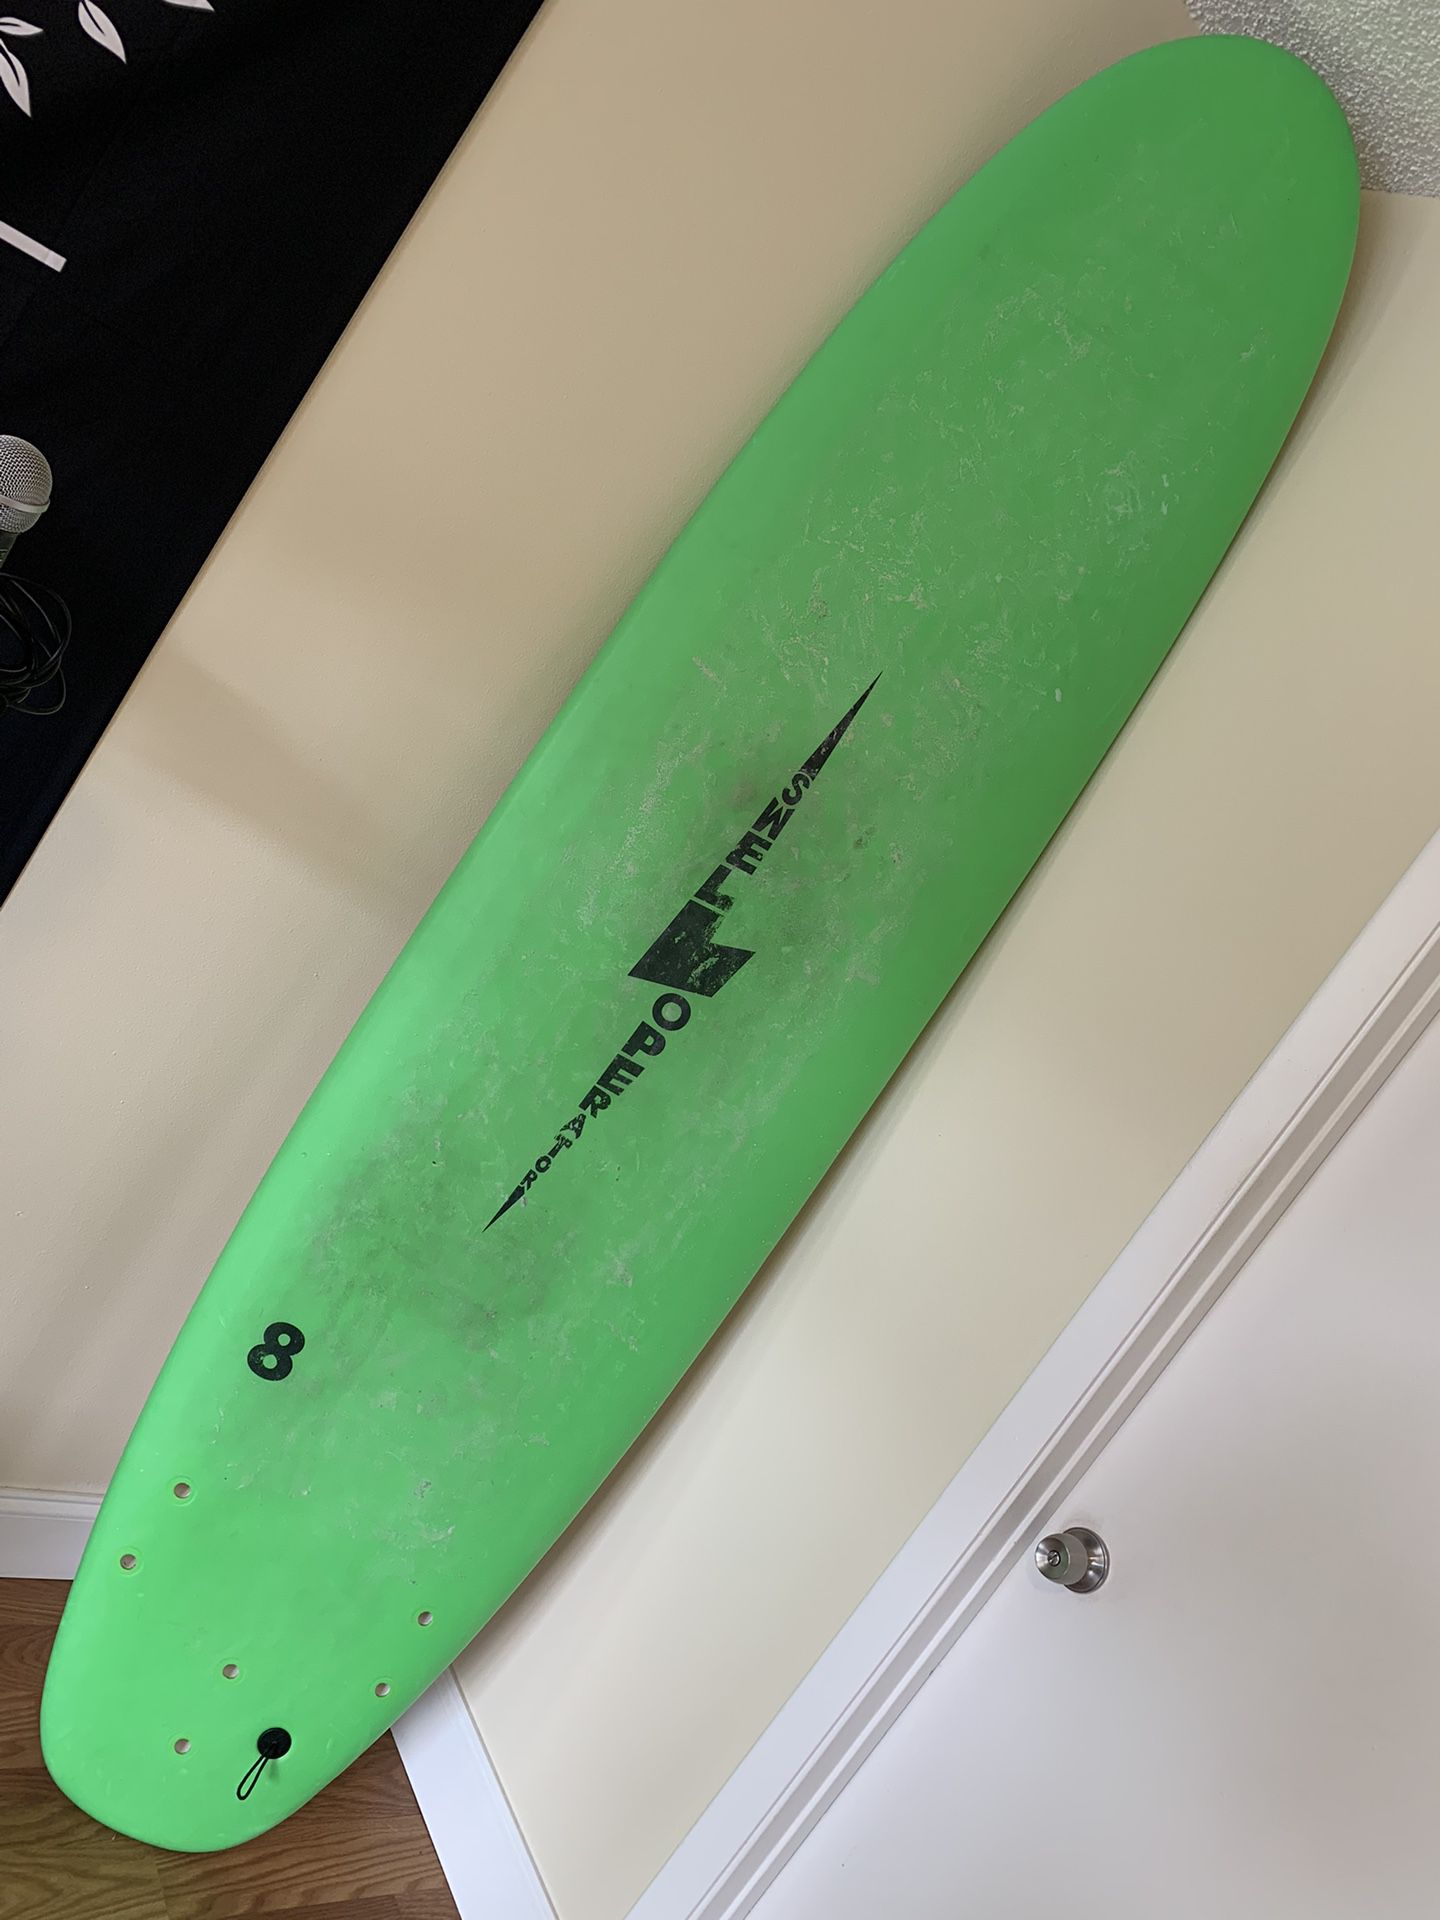 Beginners 8’ Foamy Surfboard 